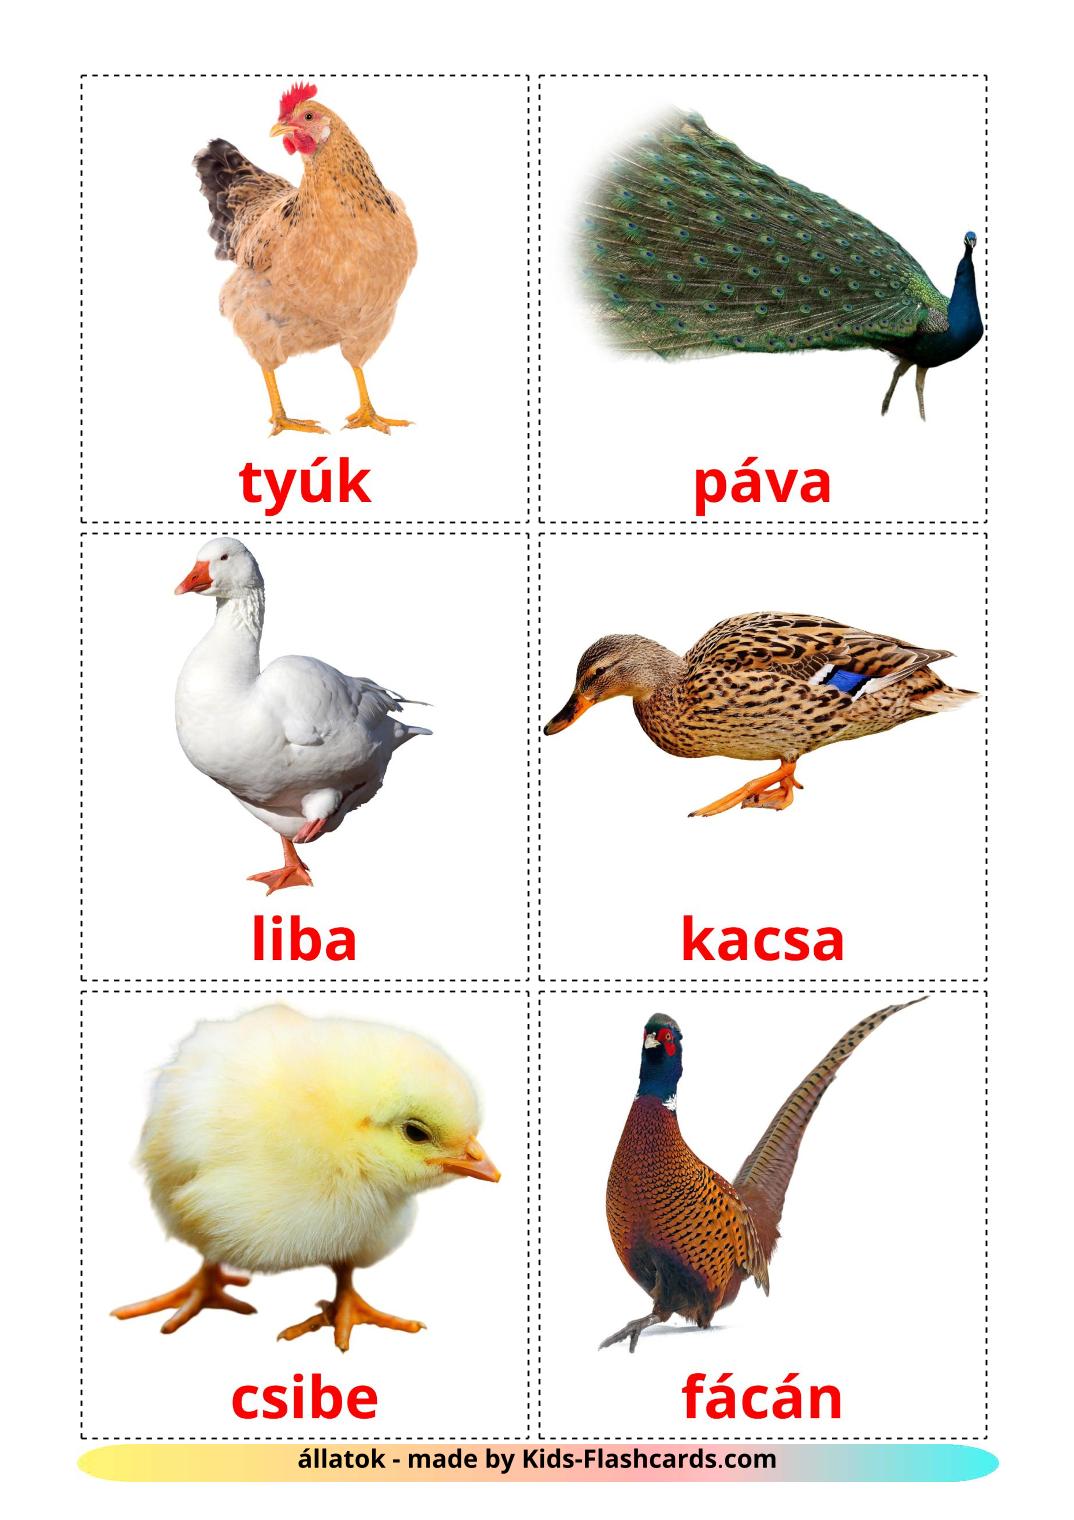 Aves da Quinta - 11 Flashcards ahmáricoes gratuitos para impressão